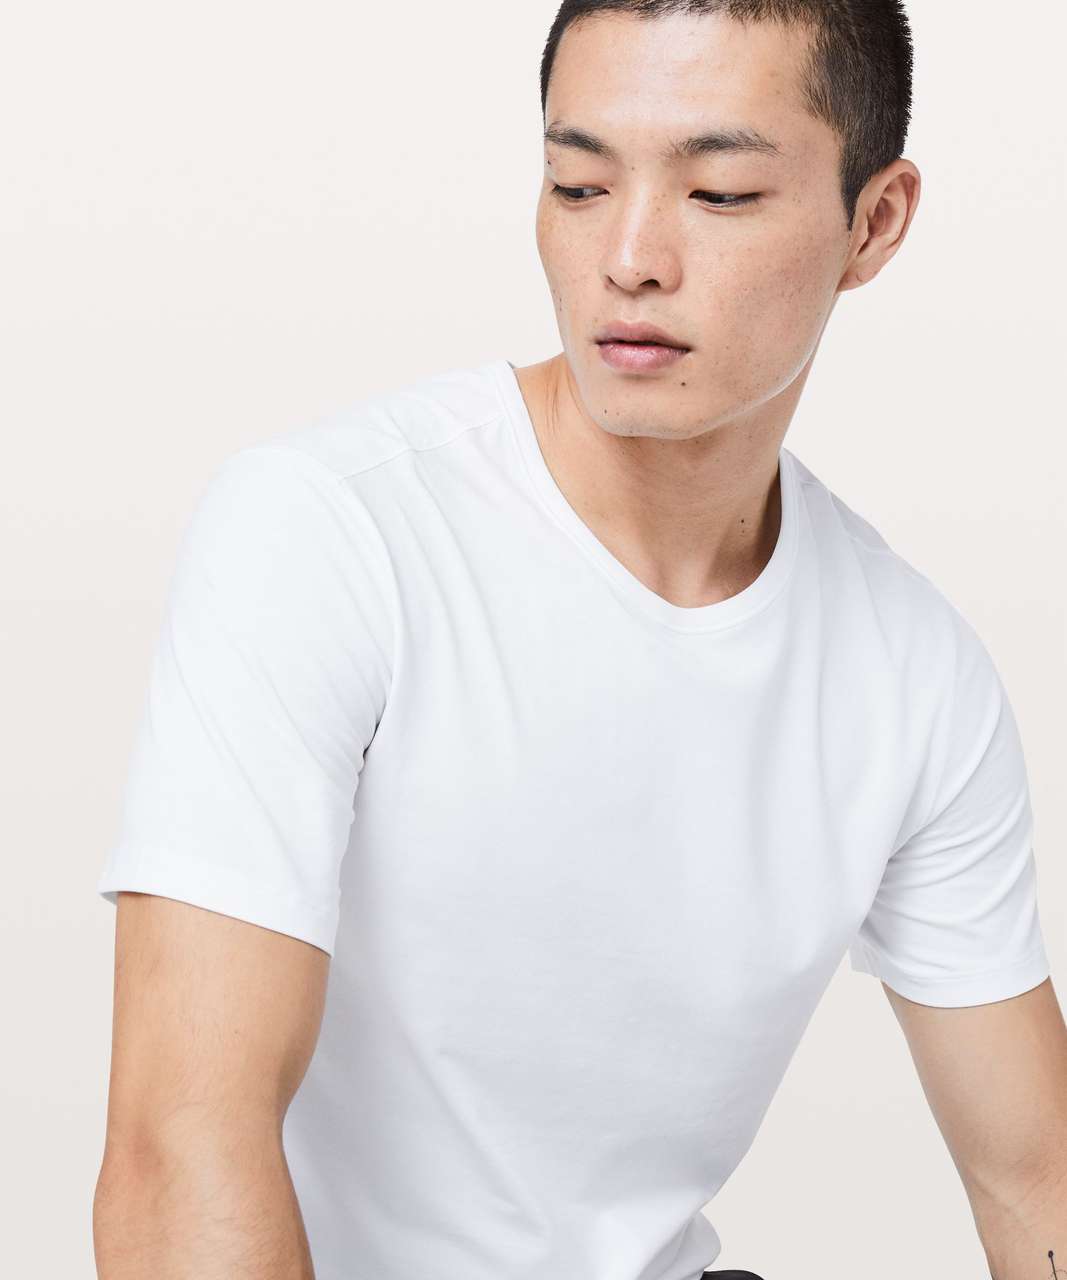 Lululemon 5 Year Basic T-Shirt - White